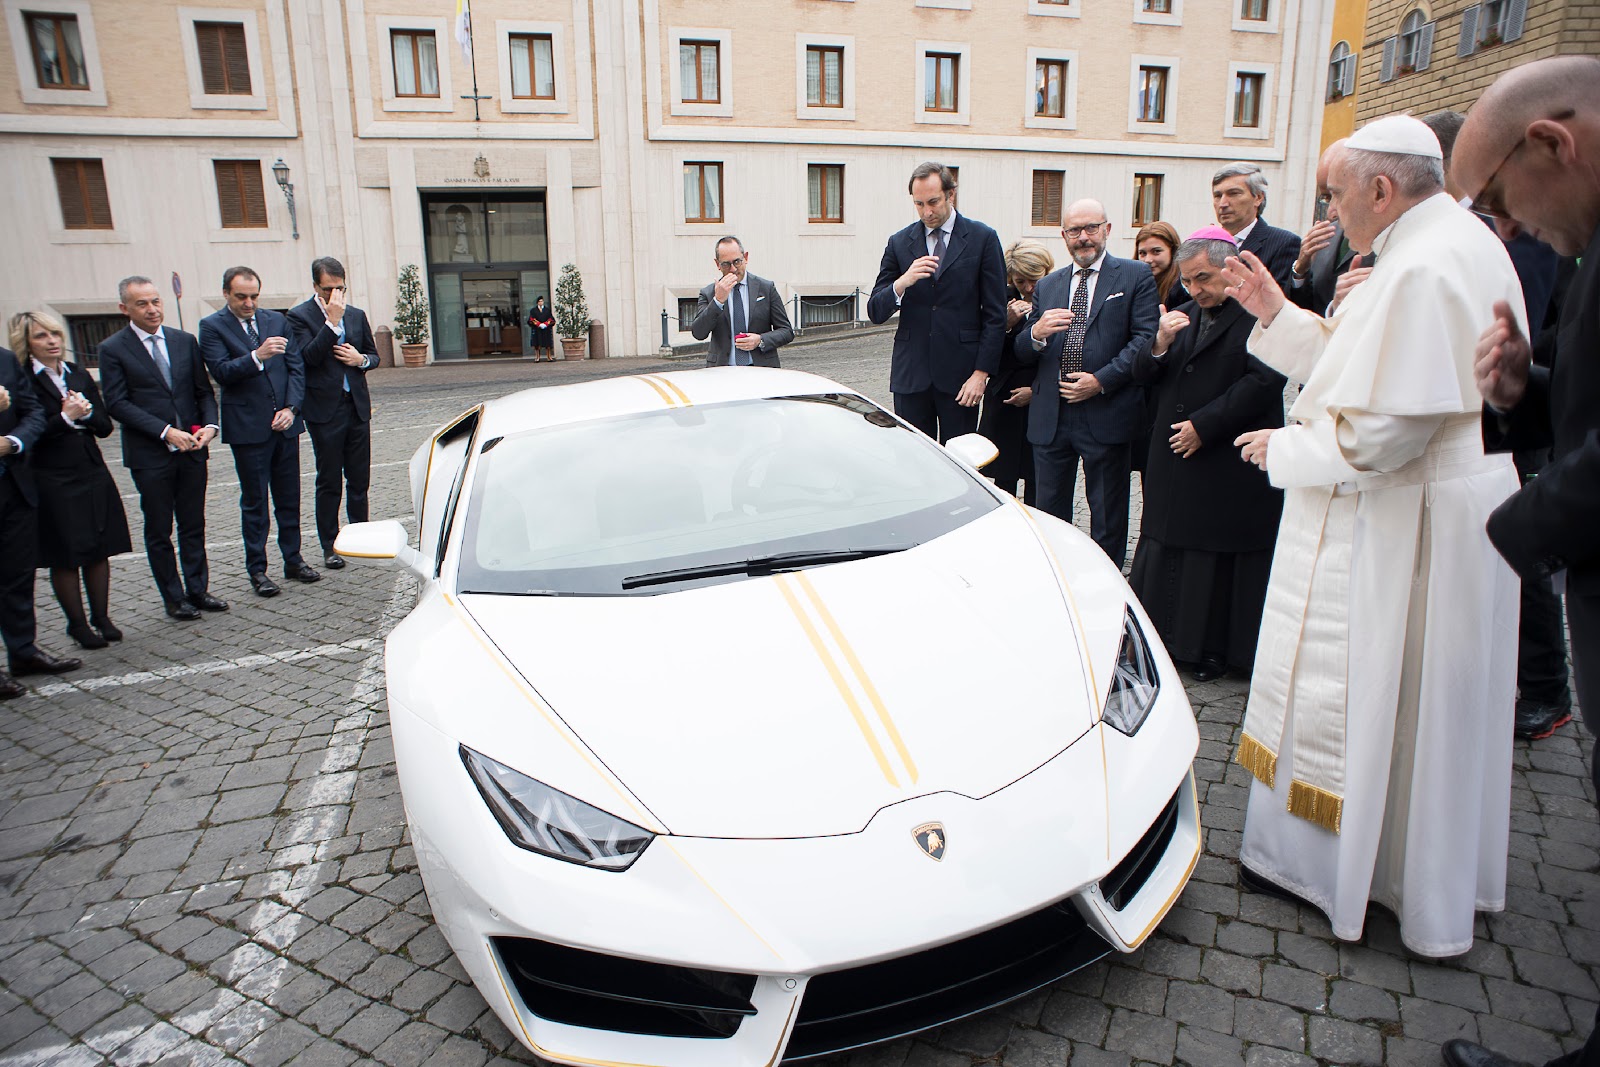 Chiếc Lamborghini thu về 900.000 Euro cho Đức Giáo hoàng từ cuộc bán đấu giá xe